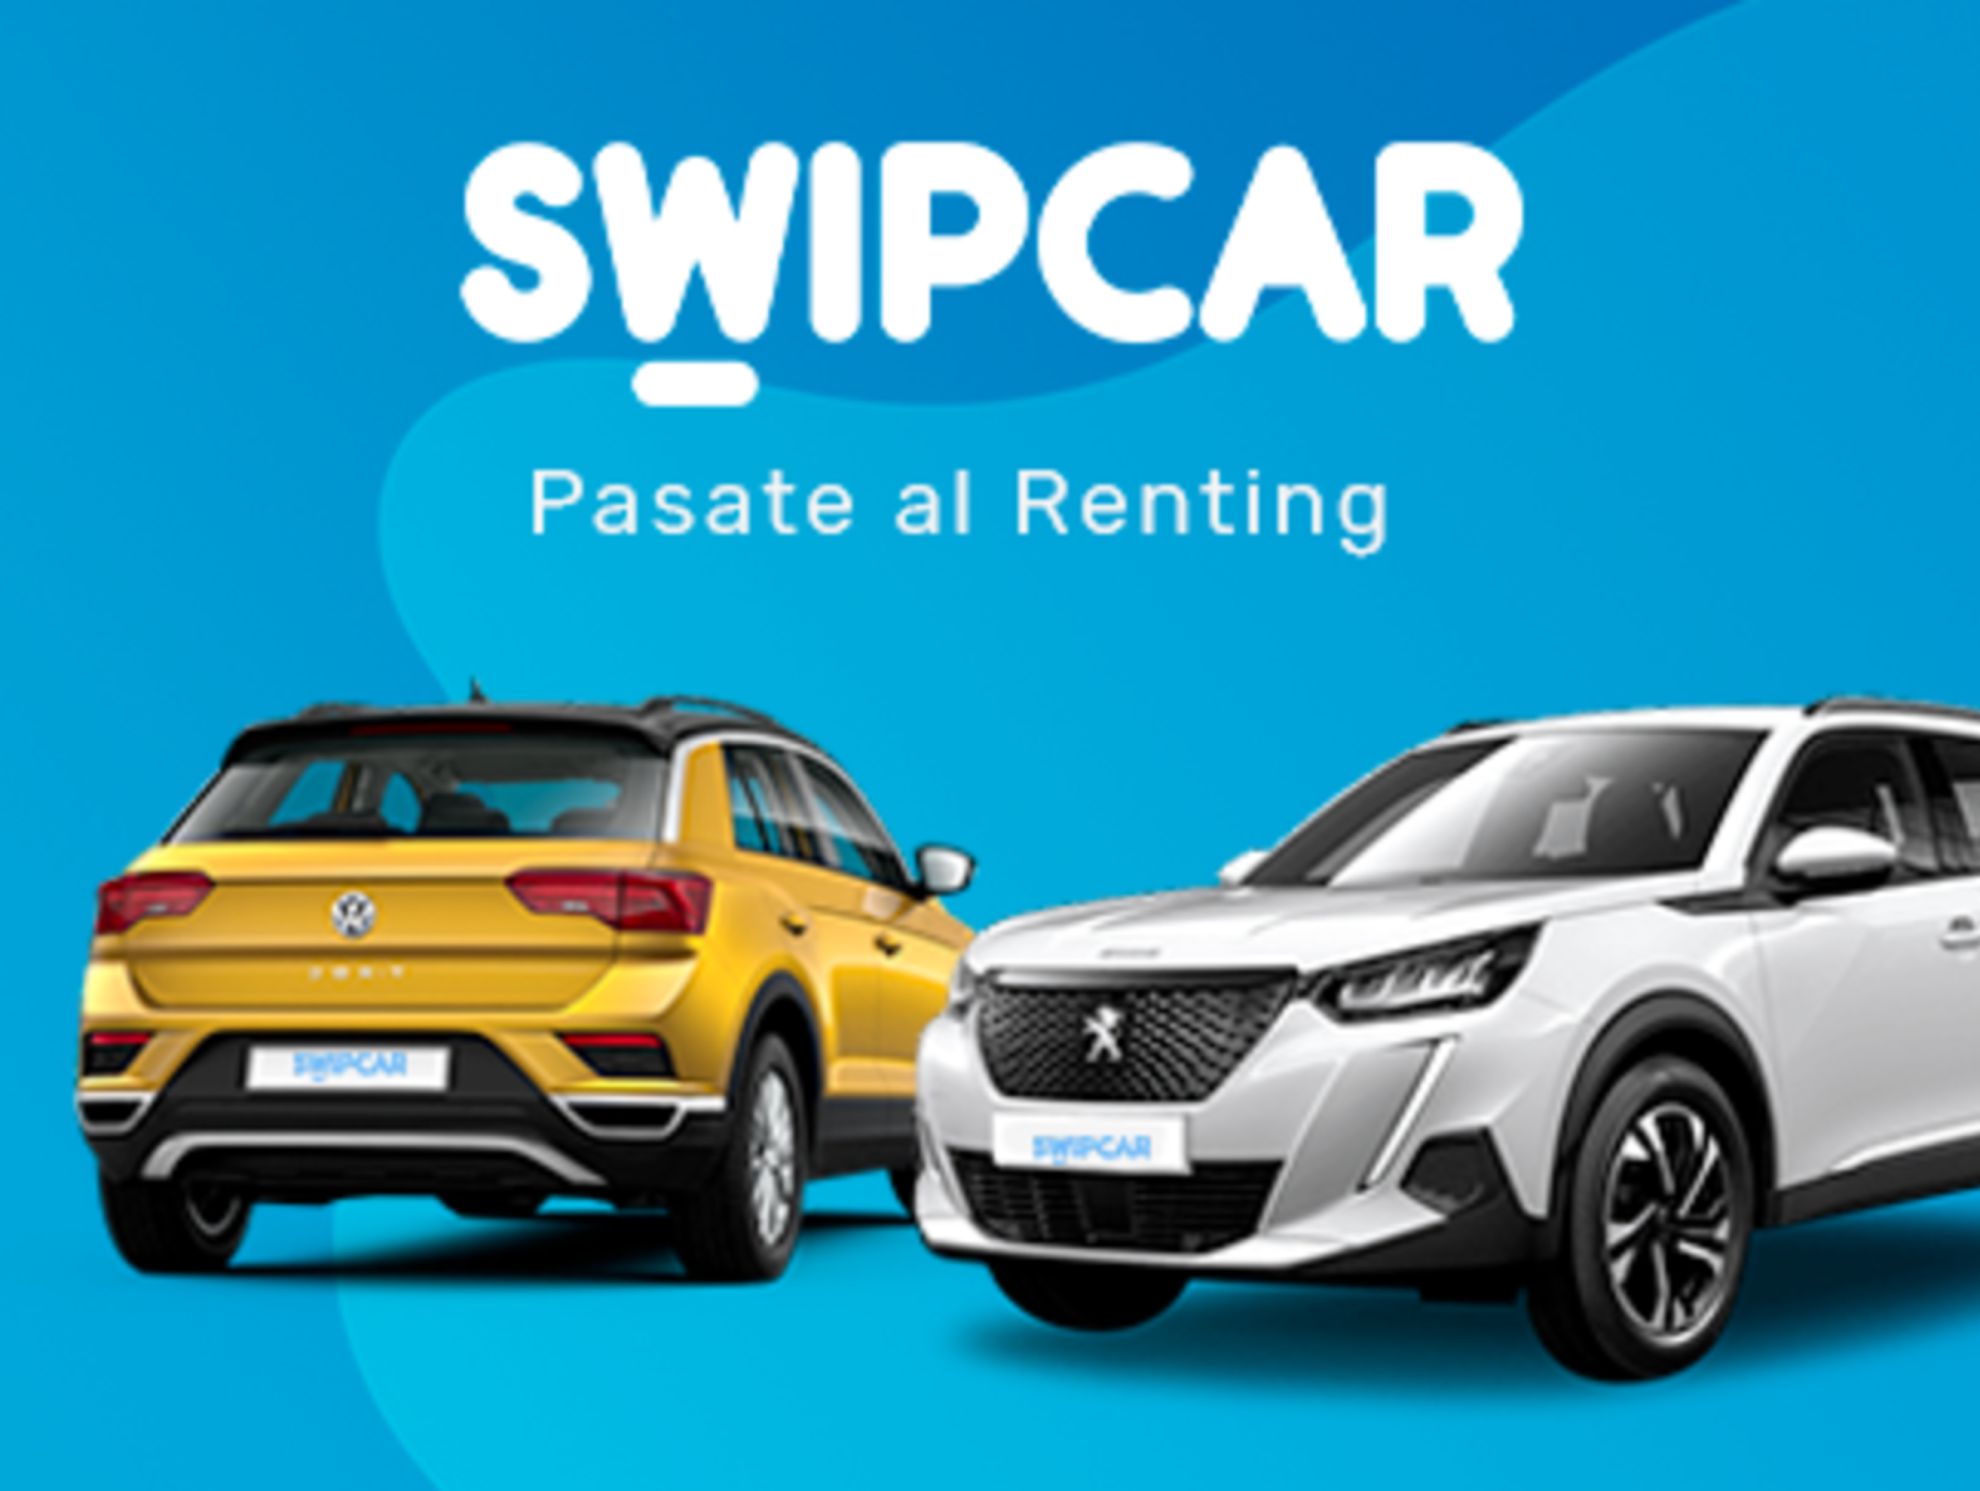 Swipcar te ofrece la forma más cómoda y sencilla de conseguir el mejor coche de renting